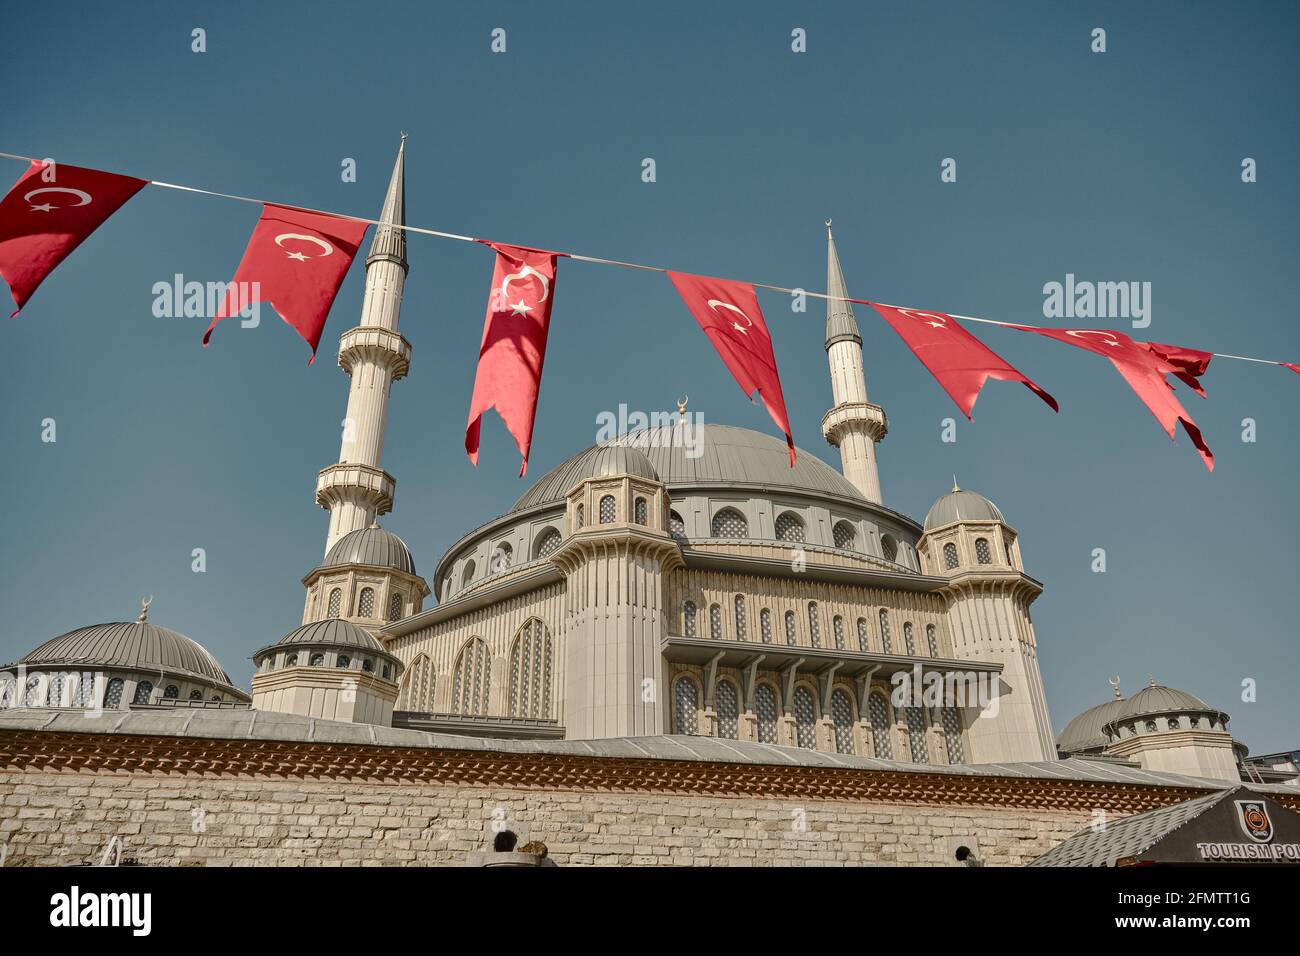 La più famosa piazza taksim durante la mattina con i dettagli di taksim, recentemente costruito moschea taksim e molte bandiere turche, Foto Stock